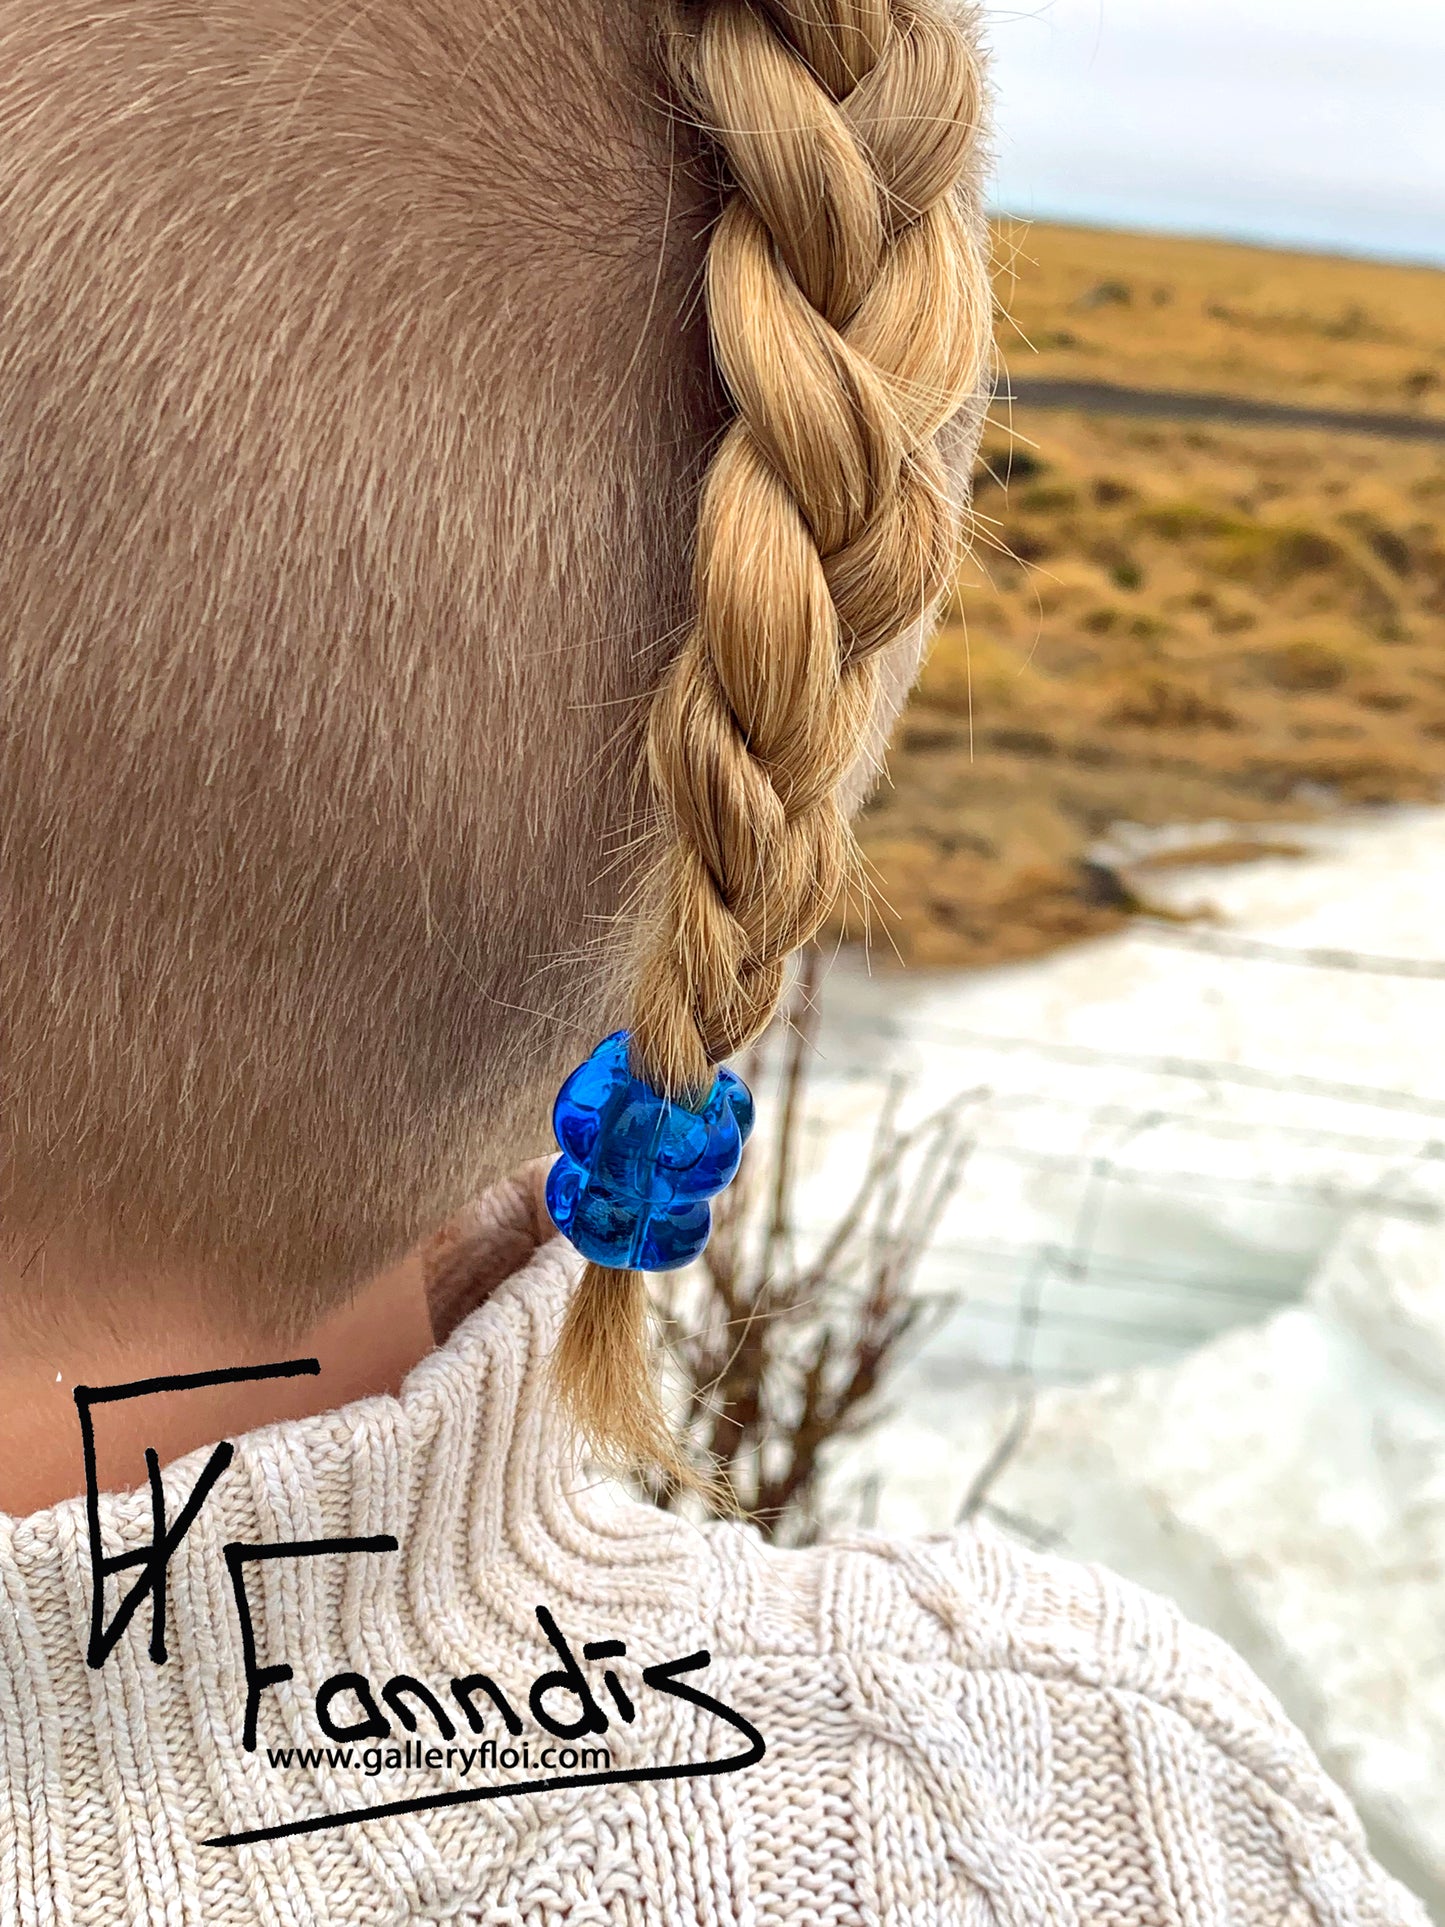 Víkinga glerperlu hárskraut dökk turkis blár / Viking glass bead hair accessories Dark turquoise blue